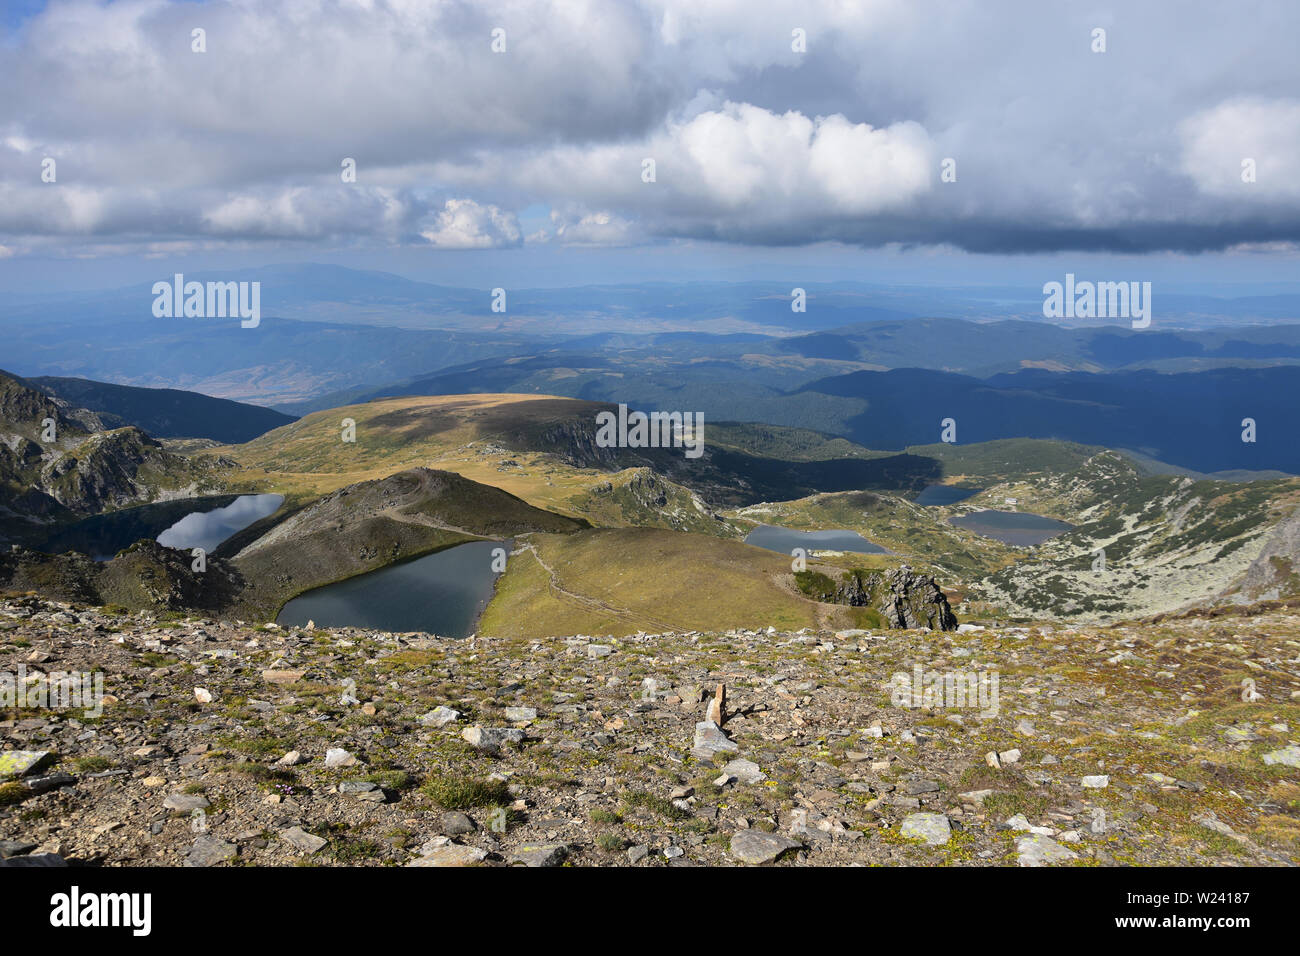 Vue sur les sept lacs sacrés de Rila depuis la crête d'Otovishki, la montagne de Rila, en Bulgarie. Journée d'automne avec ciel spectaculaire Banque D'Images